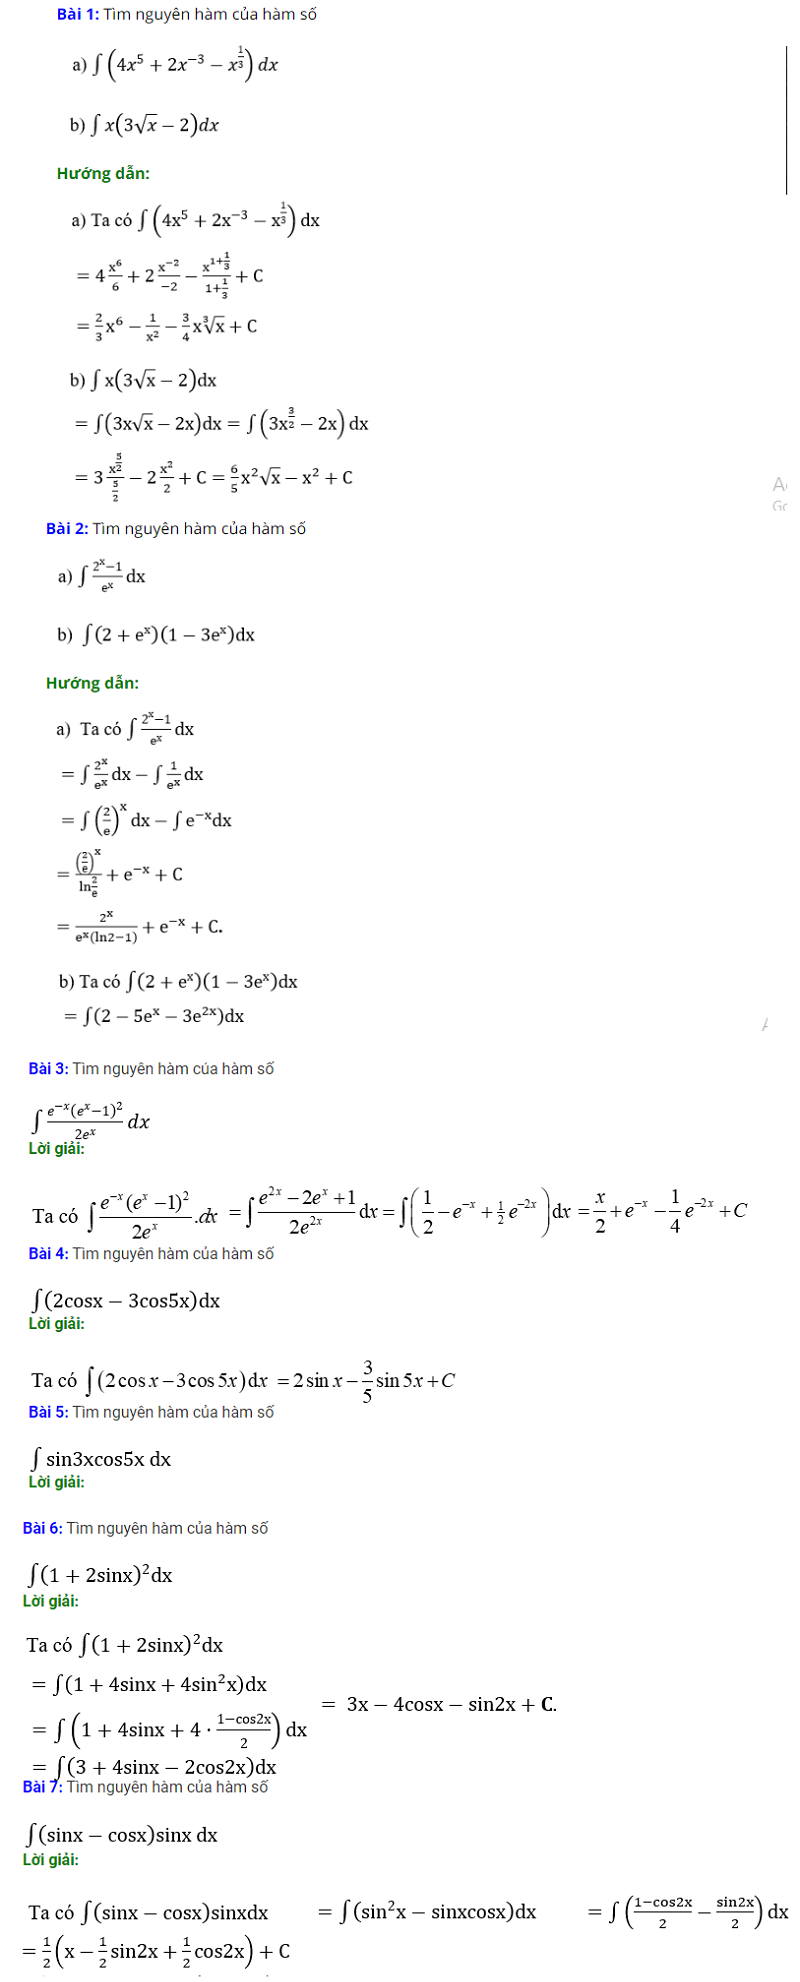 Một số bài tập ví dụ nguyên hàm của hàm số hợp kèm theo lời giải. (Nguồn: Haylamdo.com)